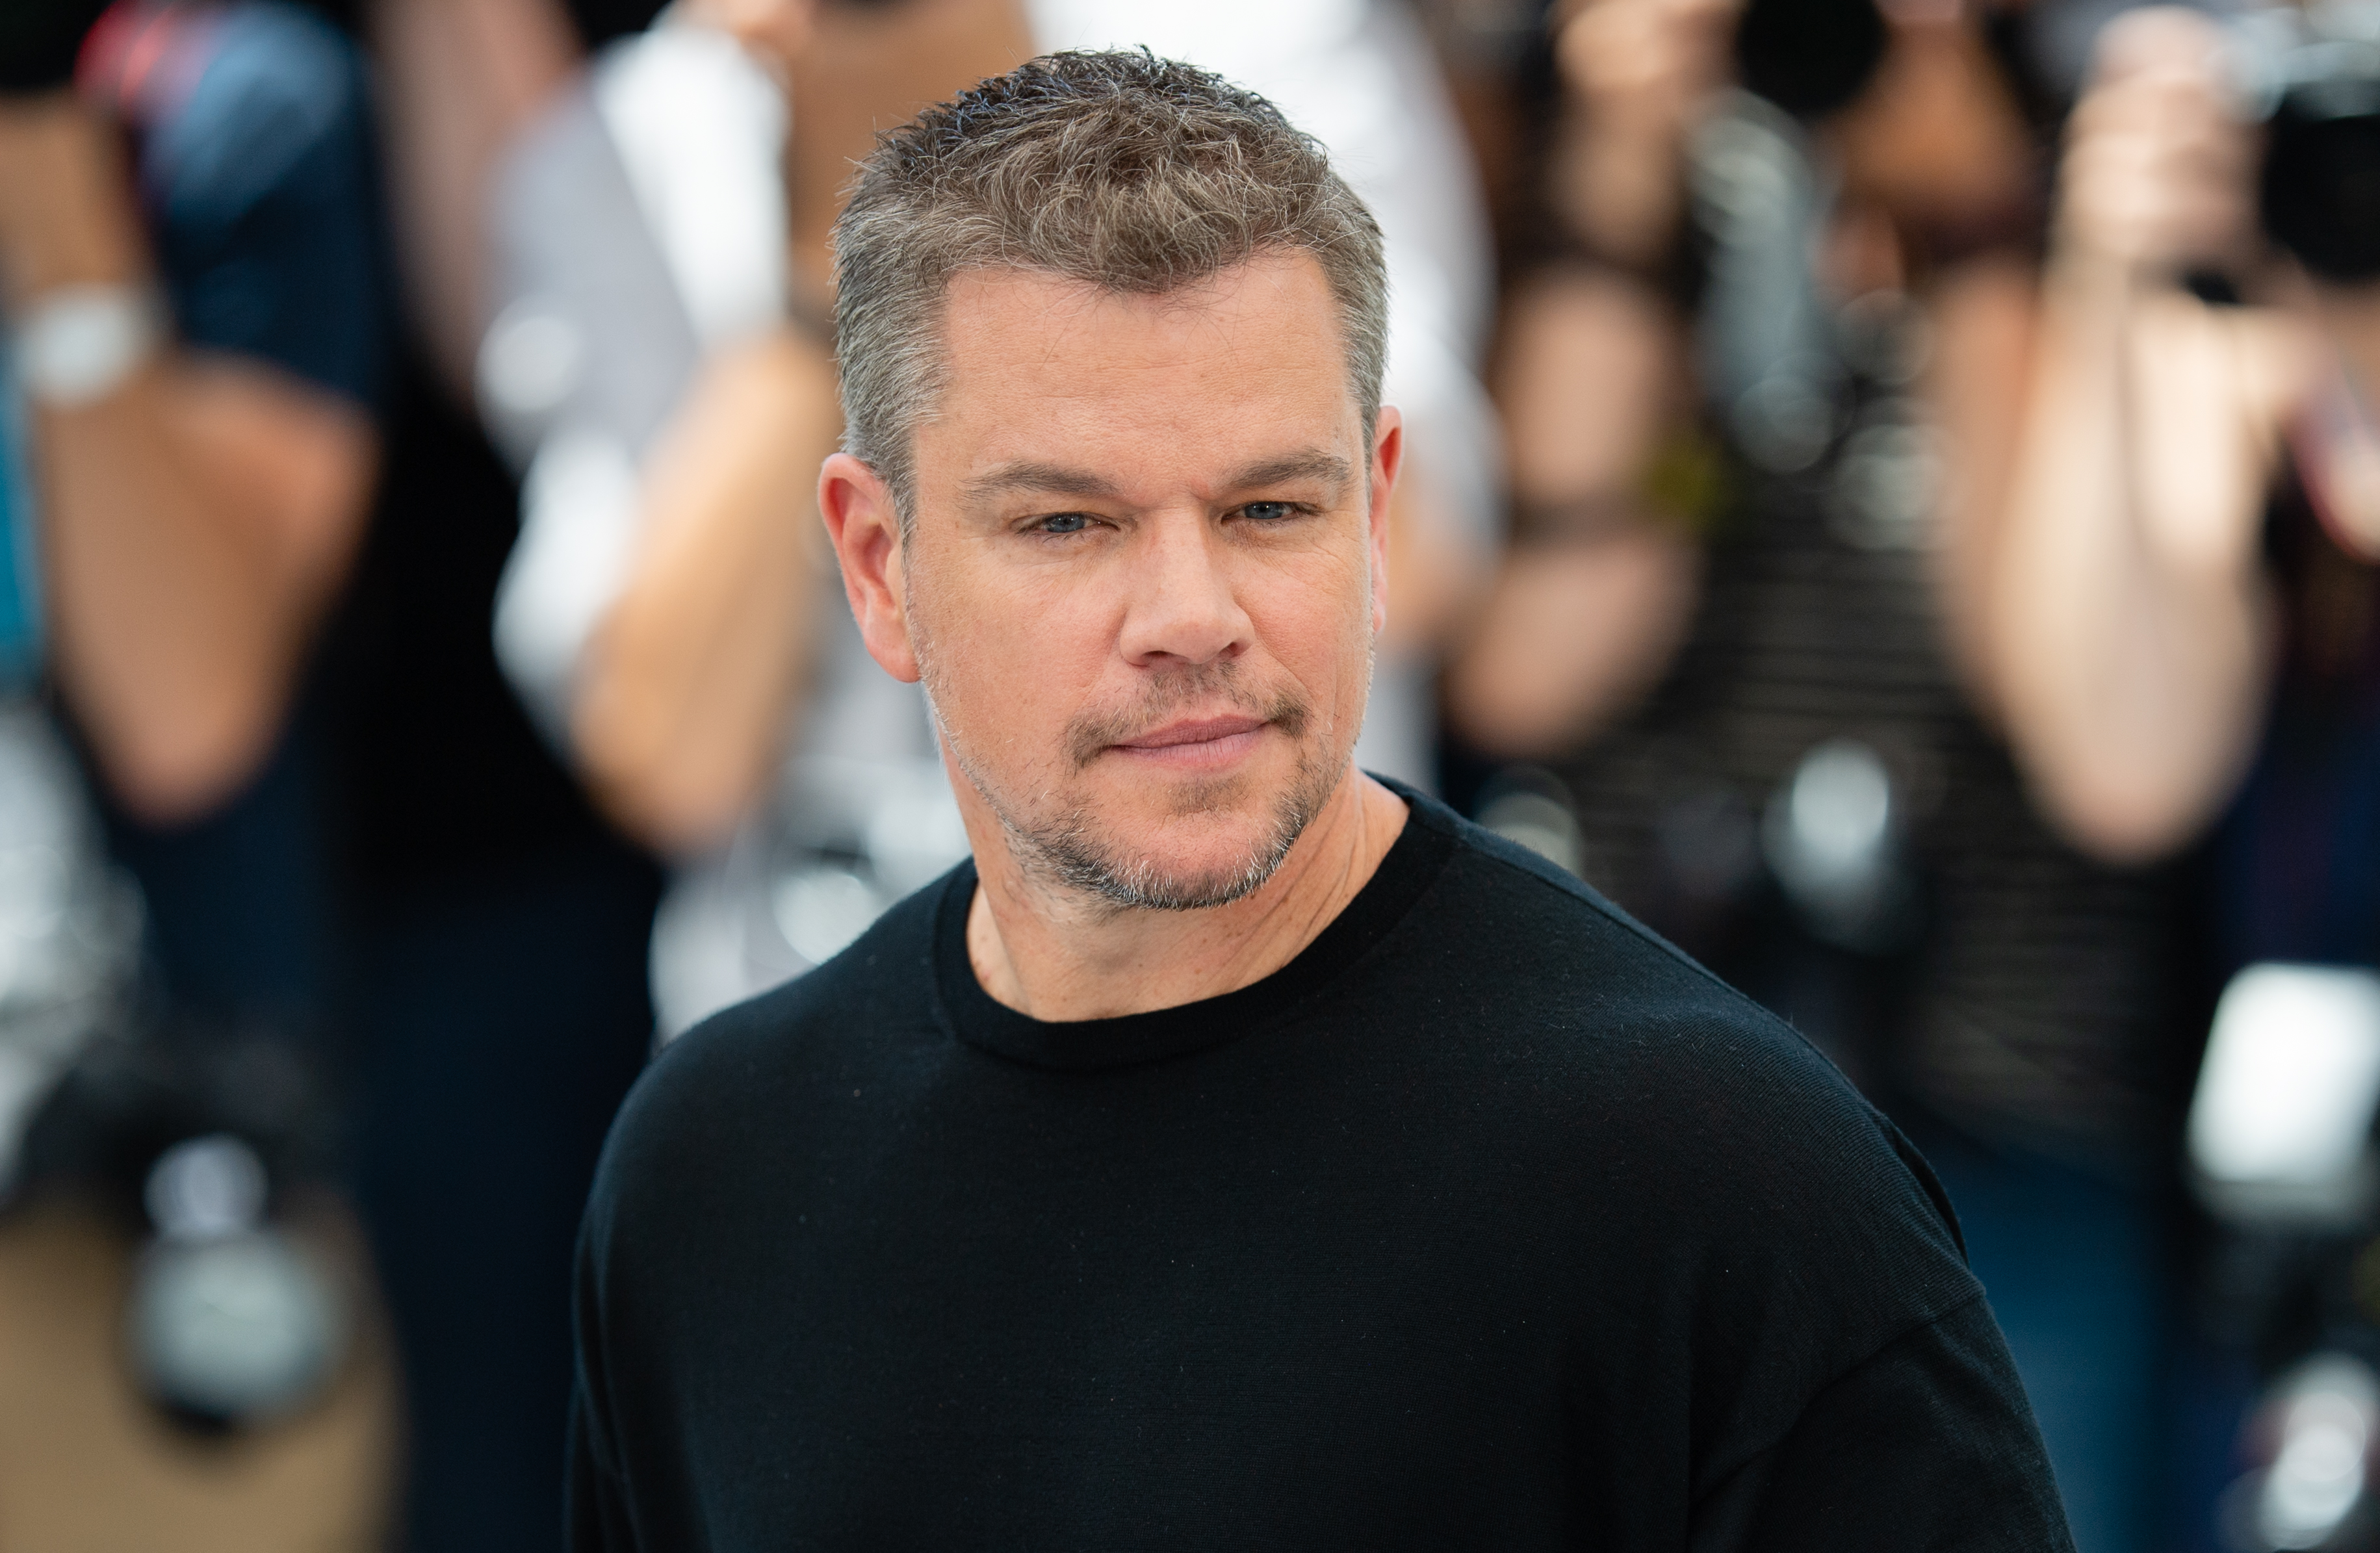 A Matt Damon le gusta cultivar el bajo perfil y concentrarse en su familia y carrera  (Photo by Samir Hussein/WireImage)